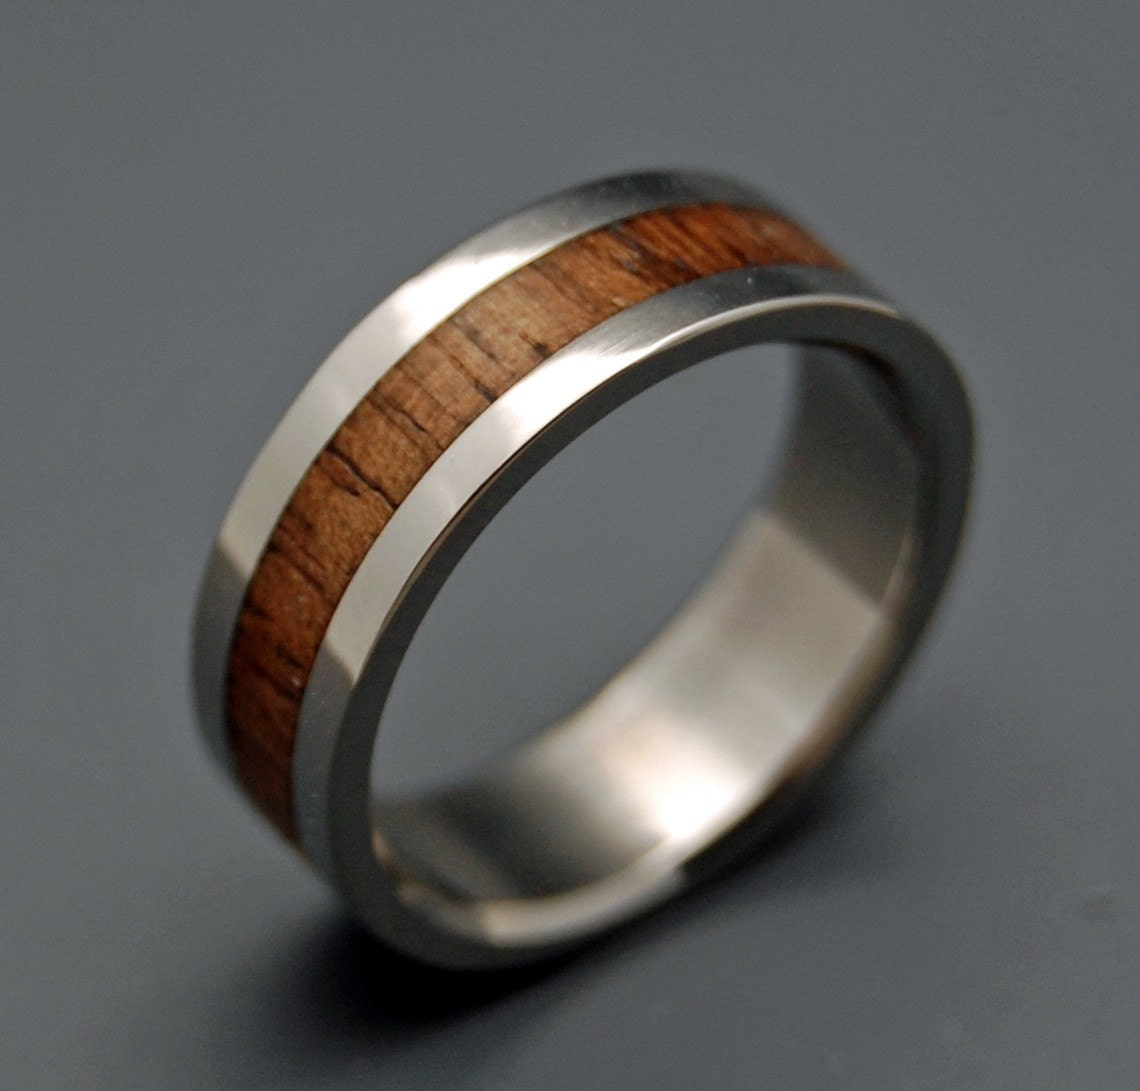 Nalu - Wooden Wedding Rings